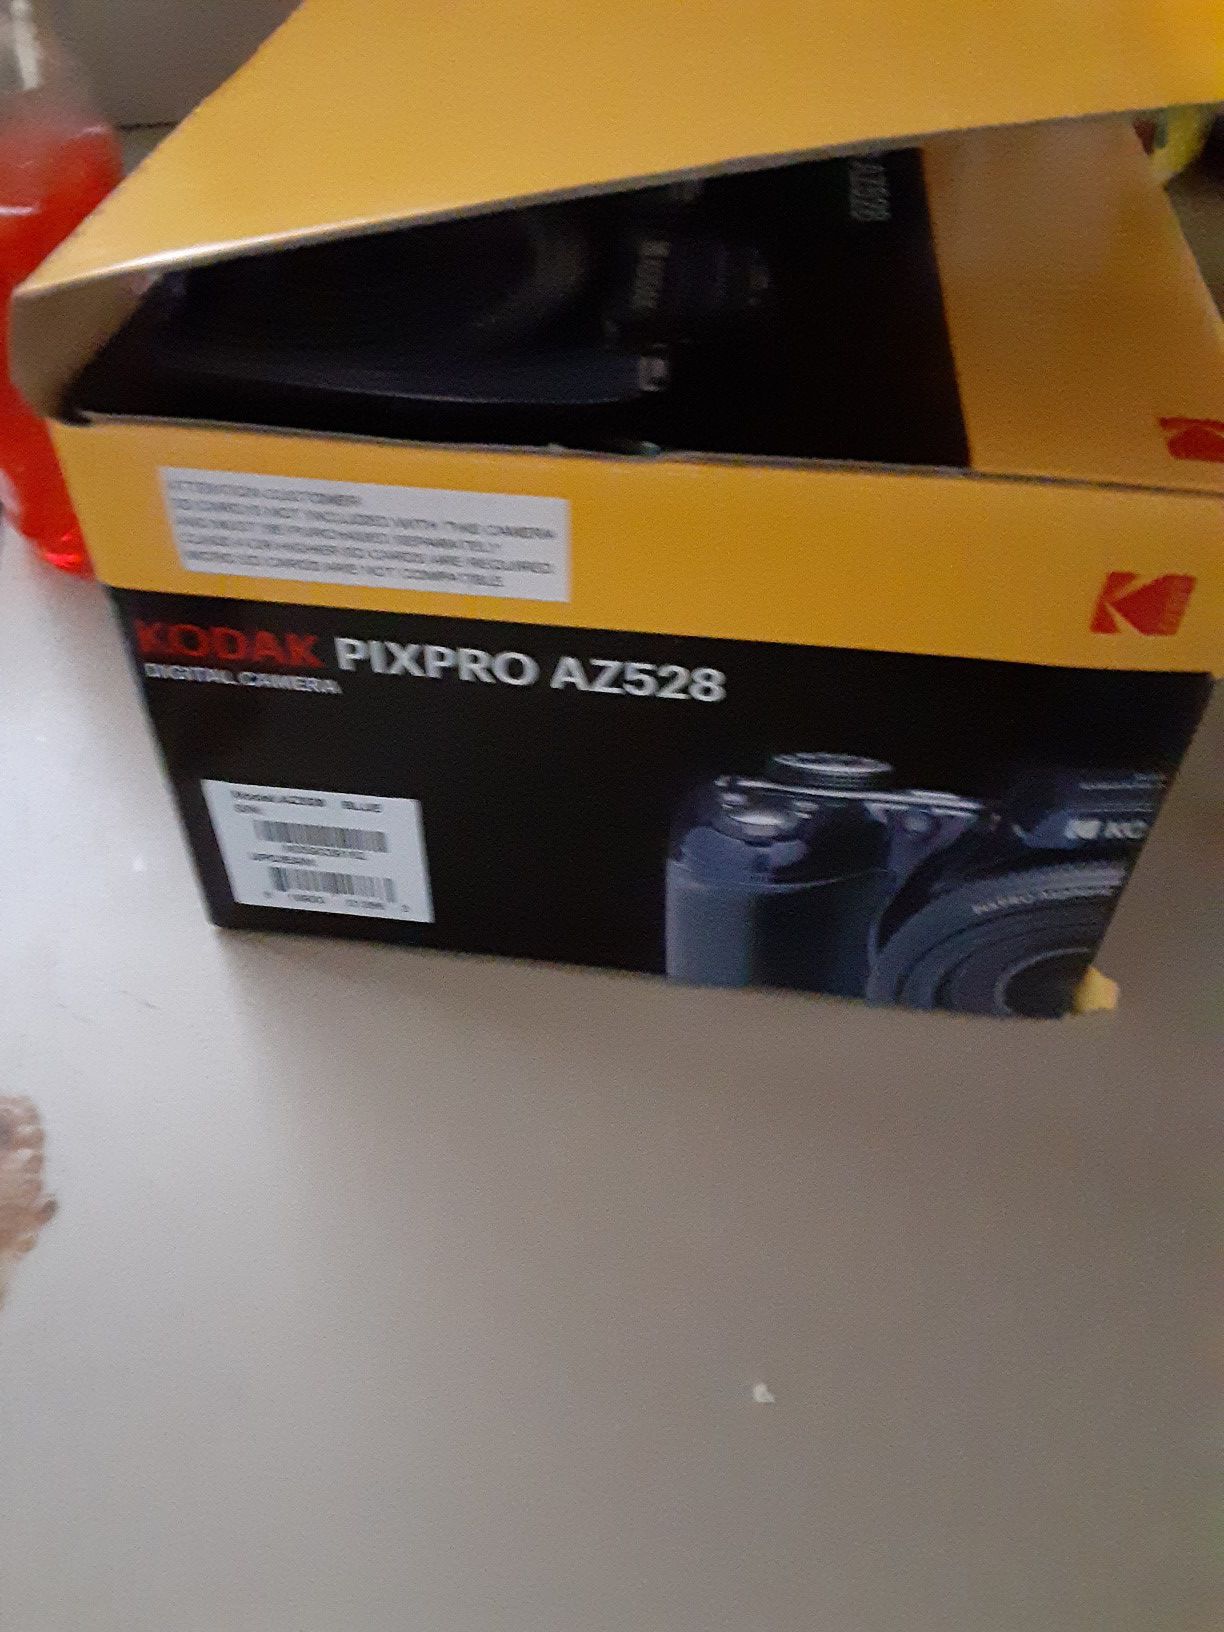 Kodak pixpro az528 $120